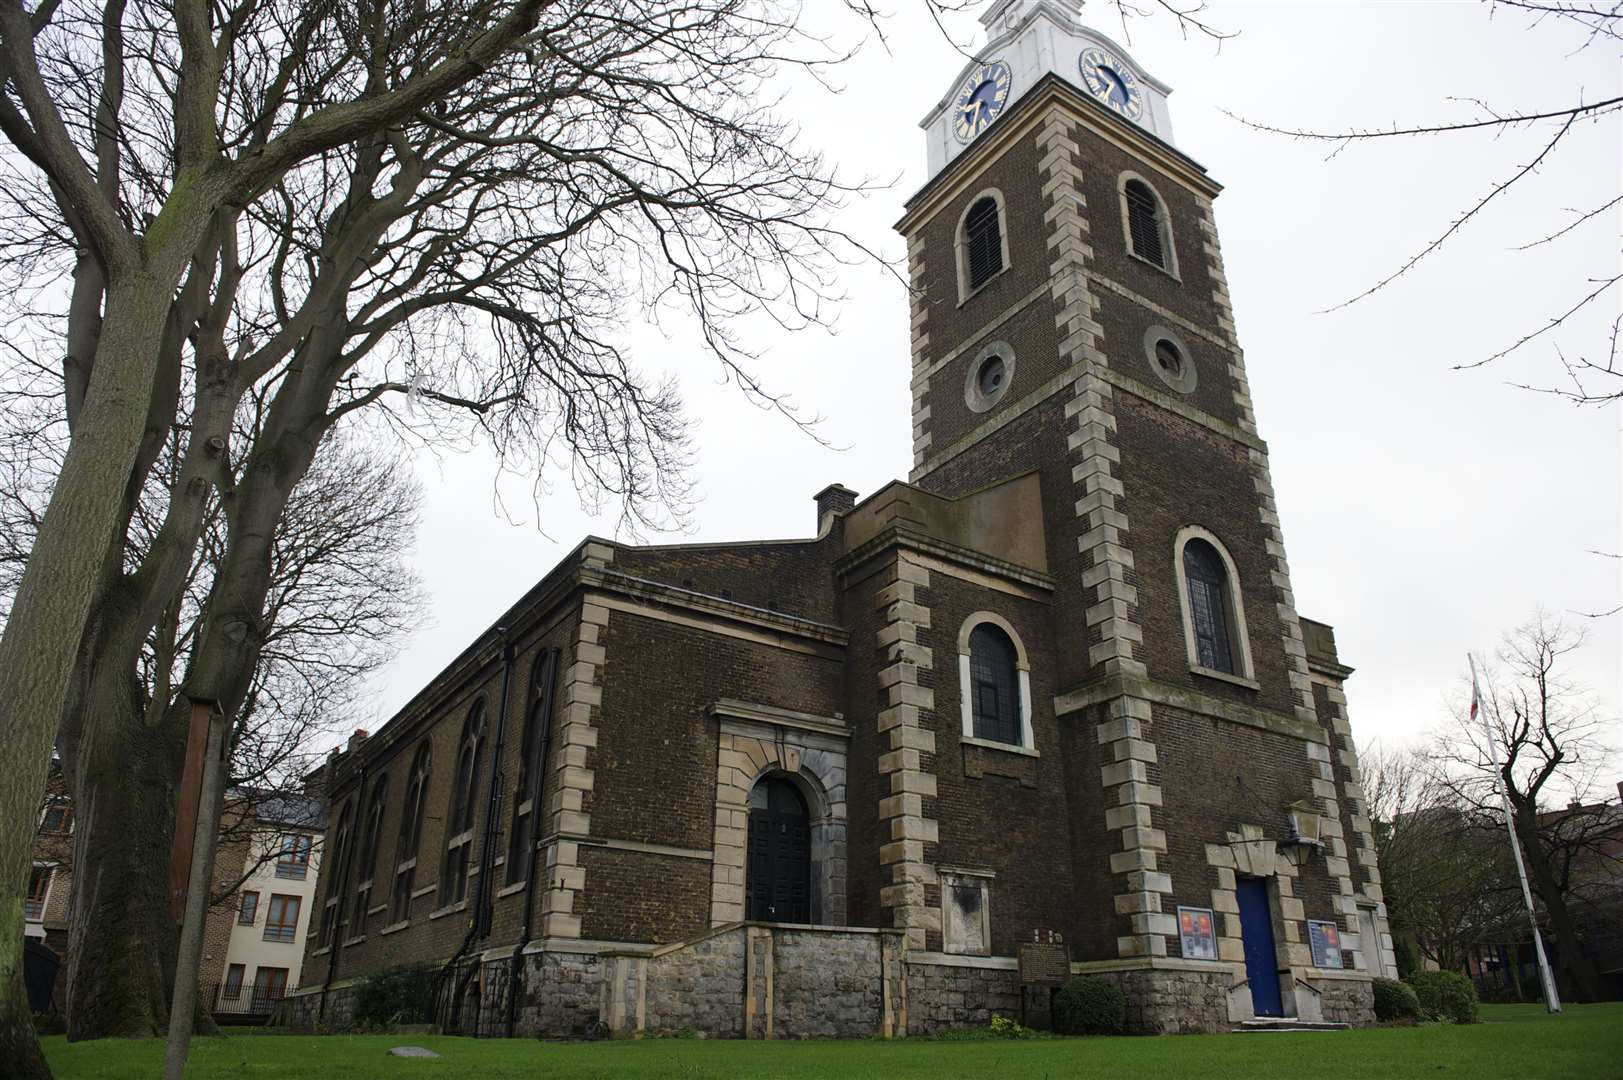 St George's Church, Church Walk, Gravesend